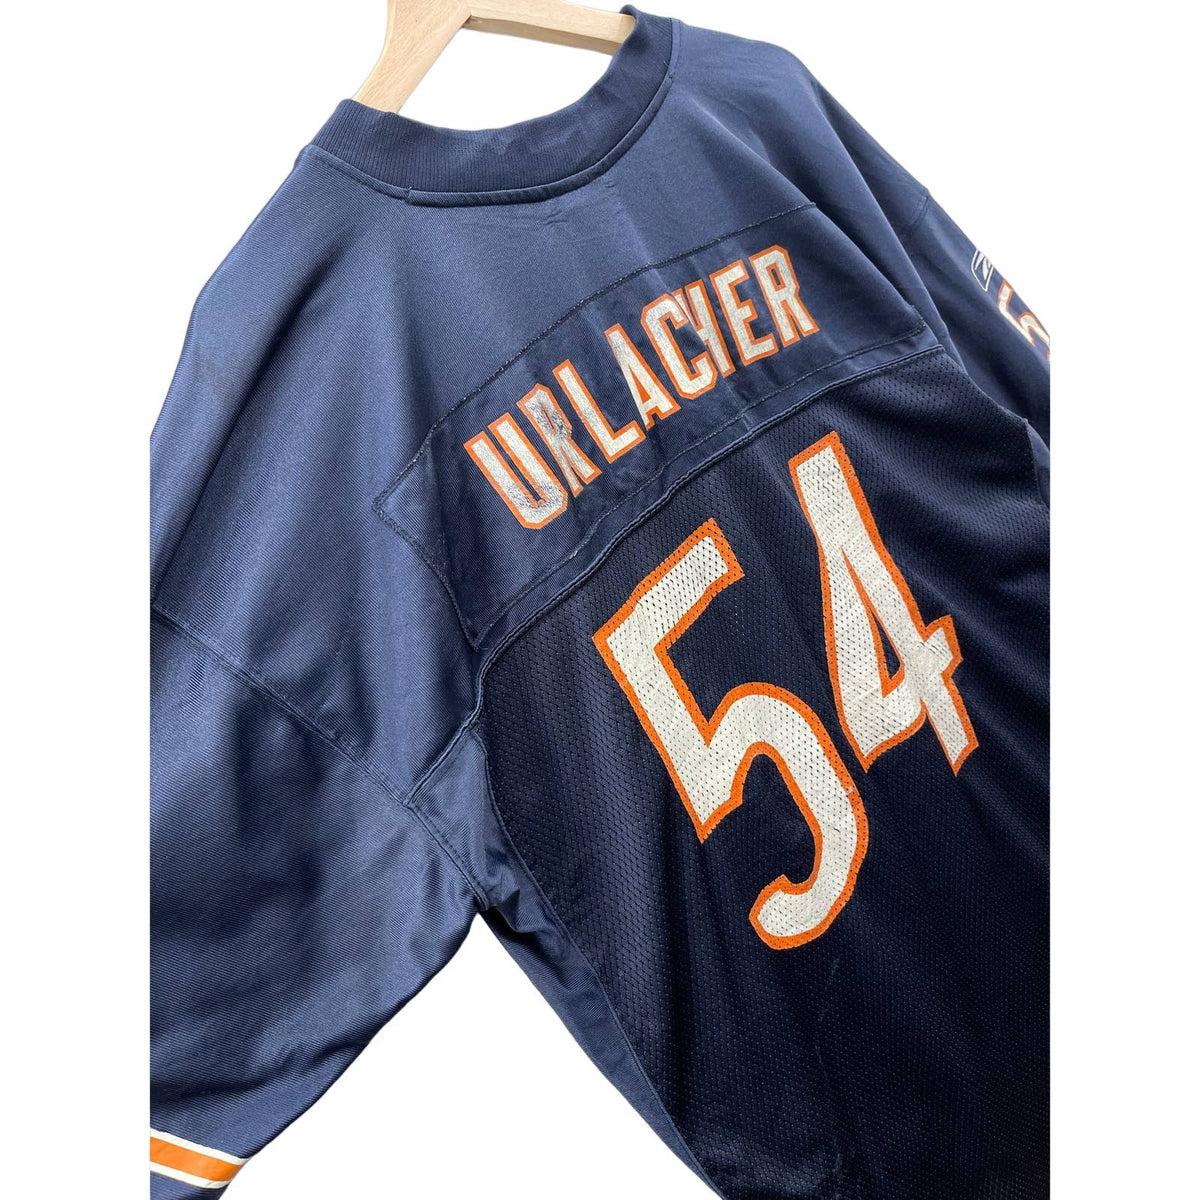 Vintage 2000's Reebok Chicago Bears Brian Urlacher NFL Team Jersey